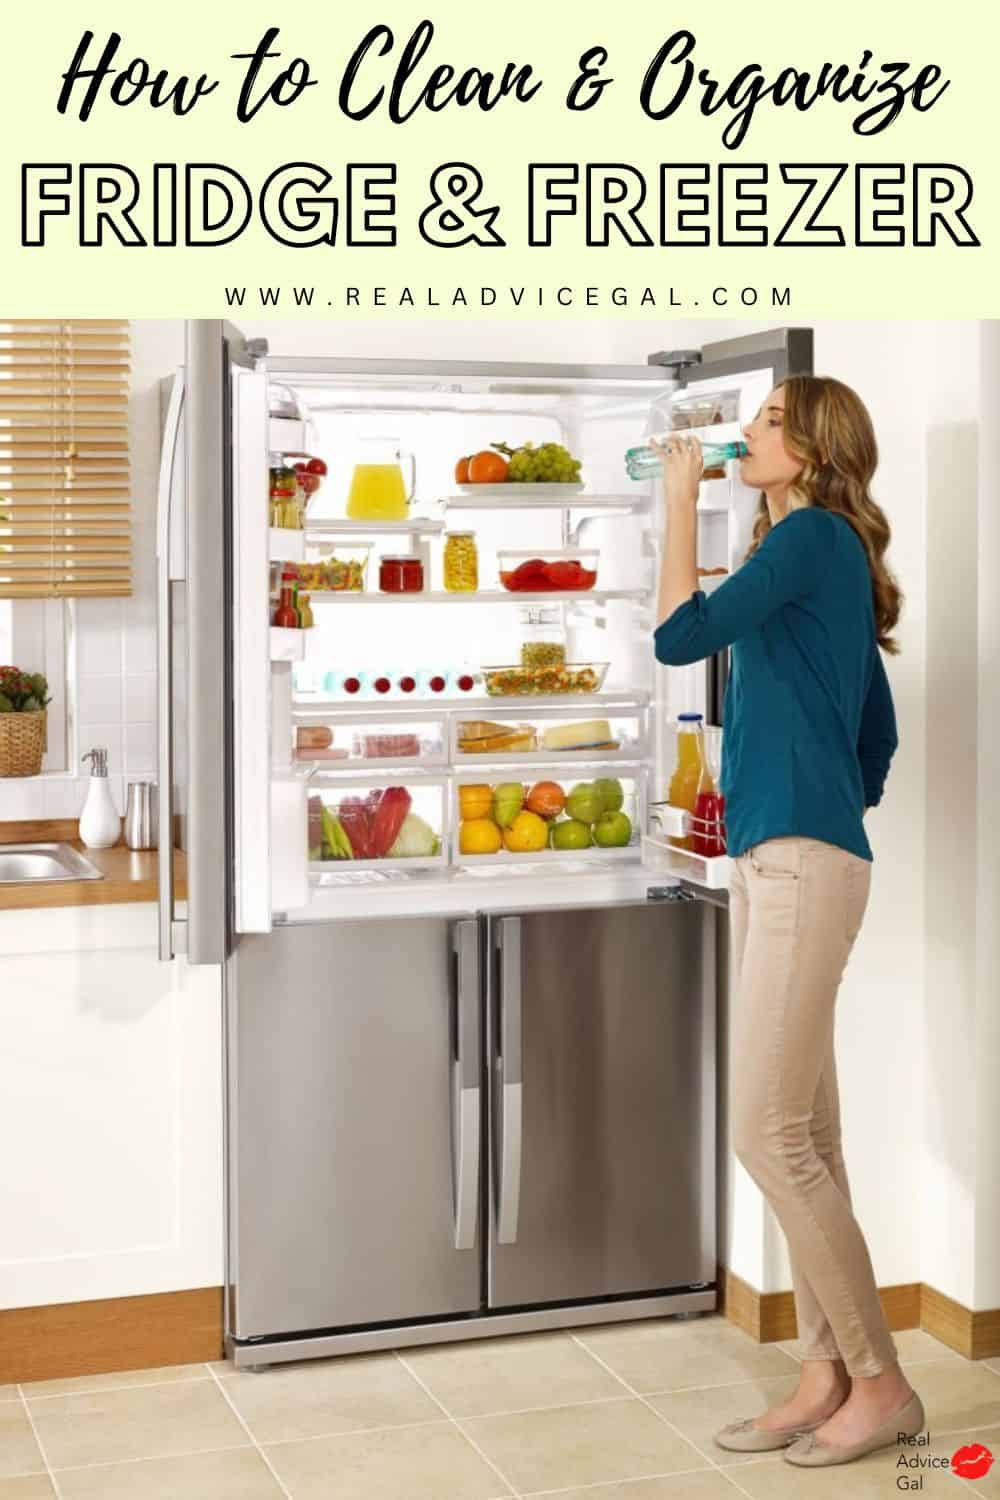 How to Organize Refrigerator